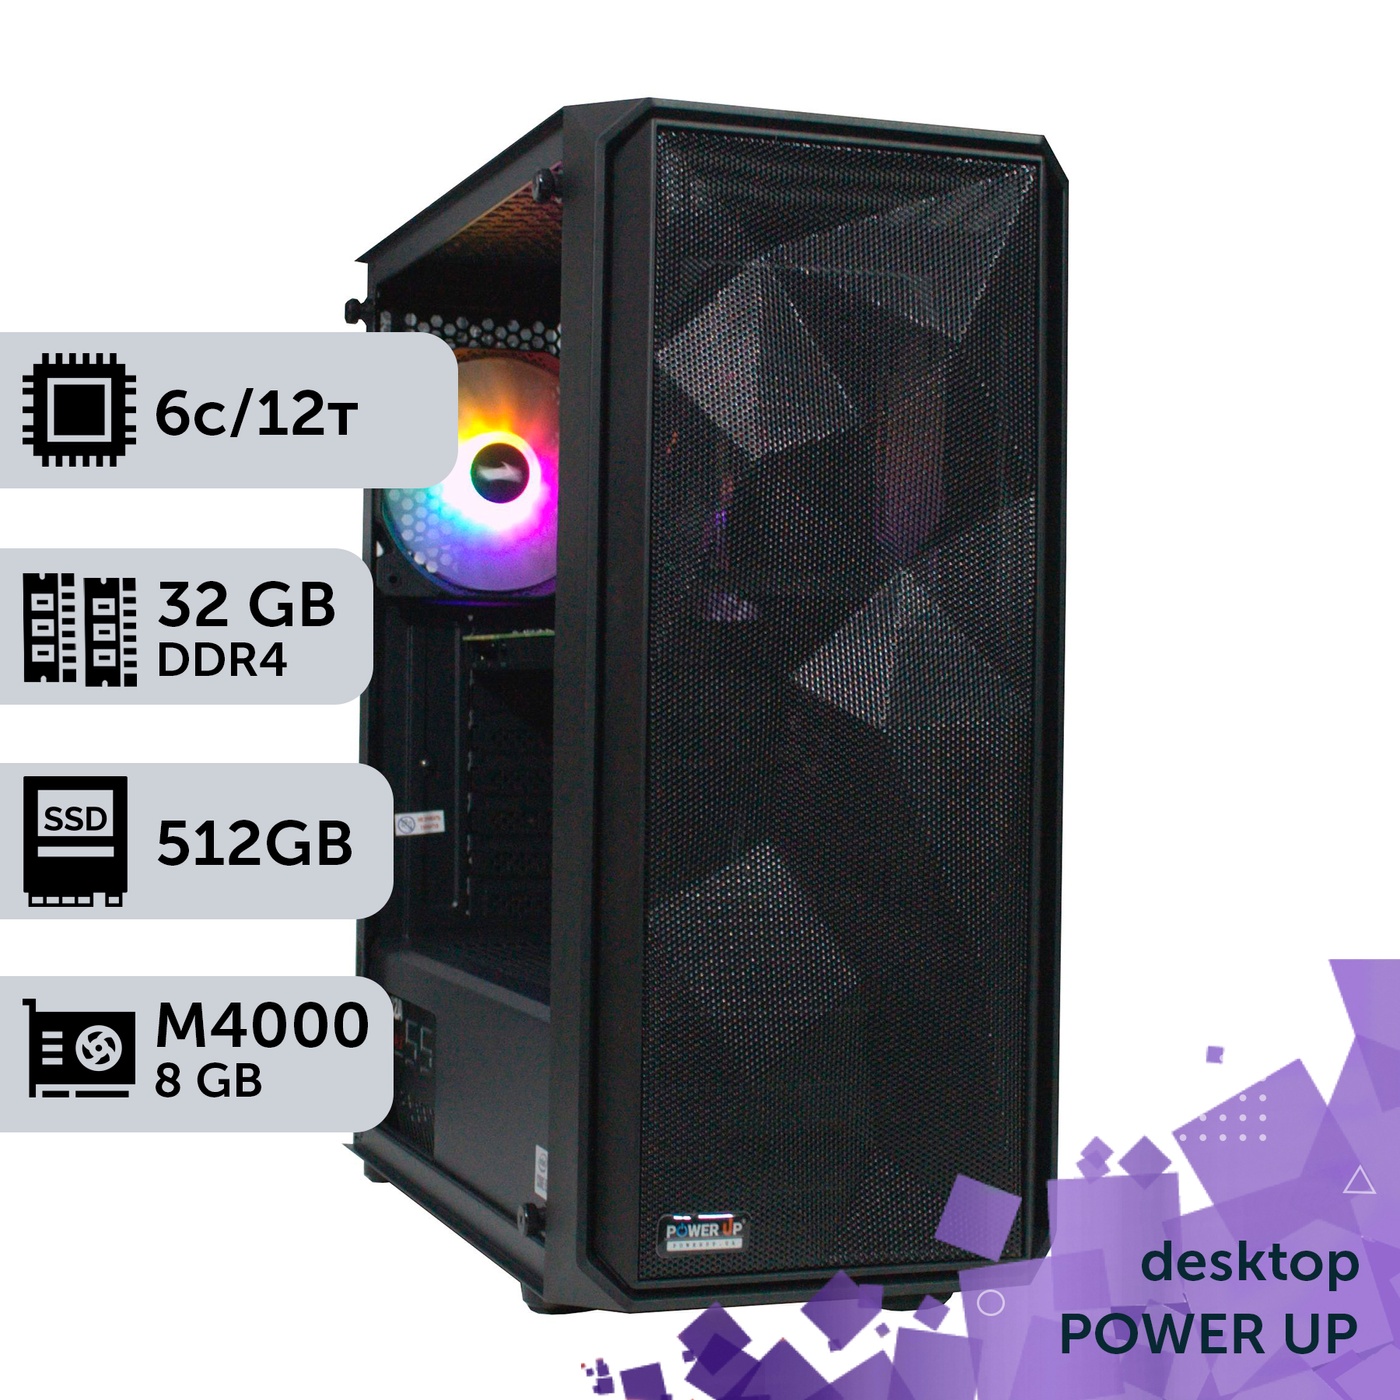 Рабочая станция PowerUp Desktop #75 Core i5 10400F/32 GB/SSD 512GB/NVIDIA Quadro M2000 4GB